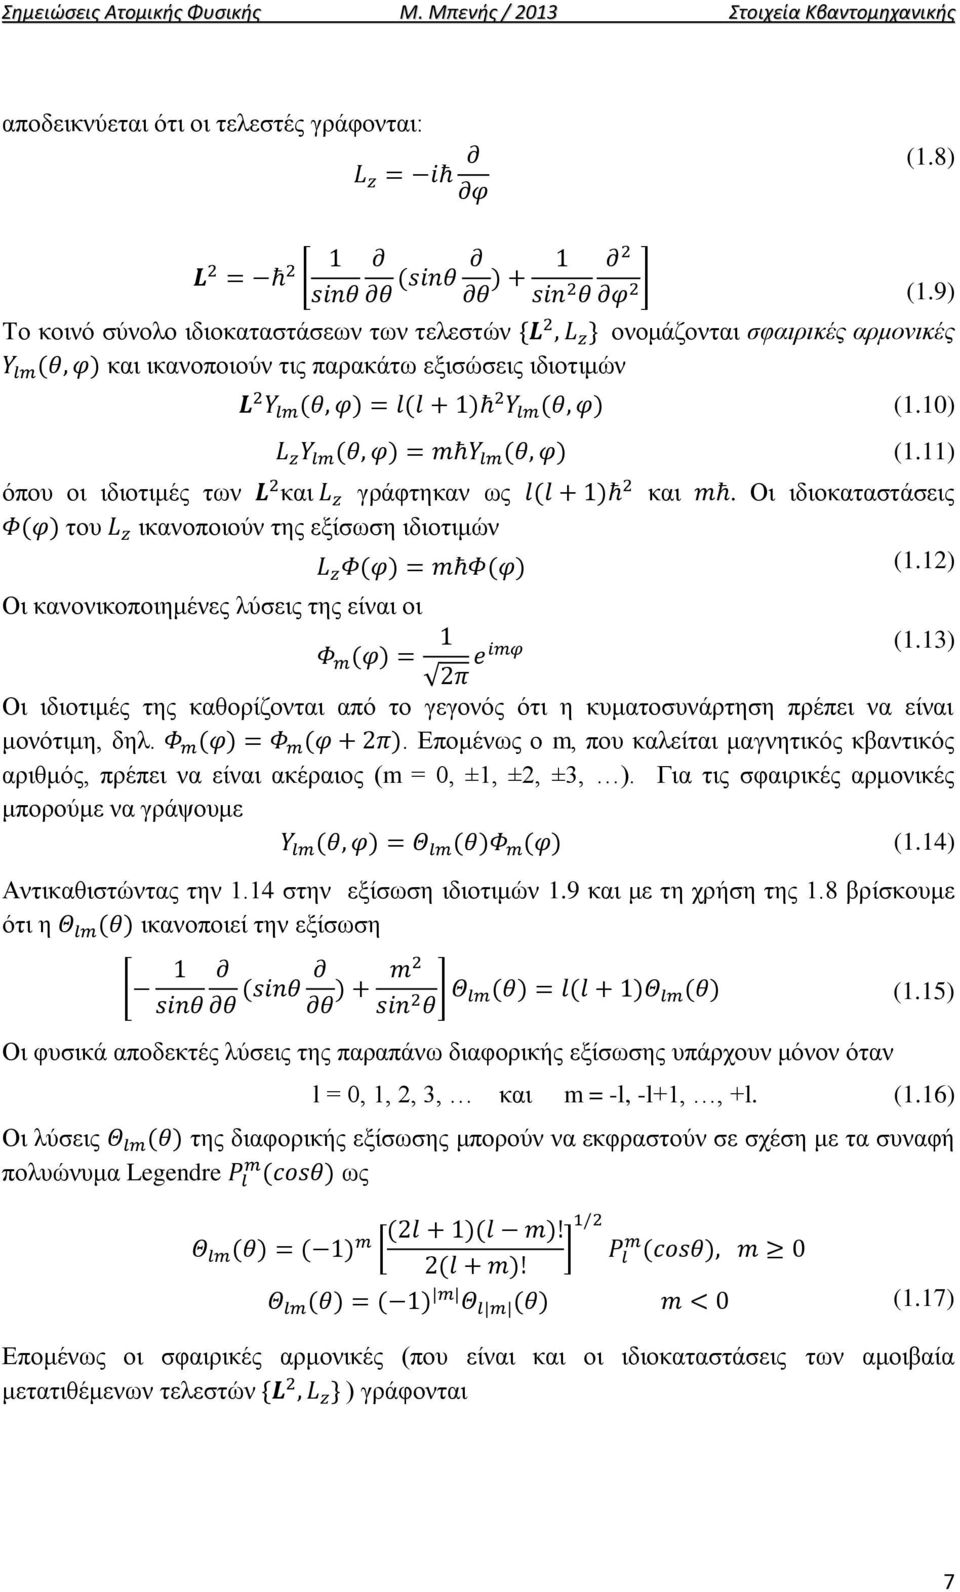 Οι ιδιοκαταστάσεις του ικανοποιούν της εξίσωση ιδιοτιμών (1.12) Οι κανονικοποιημένες λύσεις της είναι οι (1.